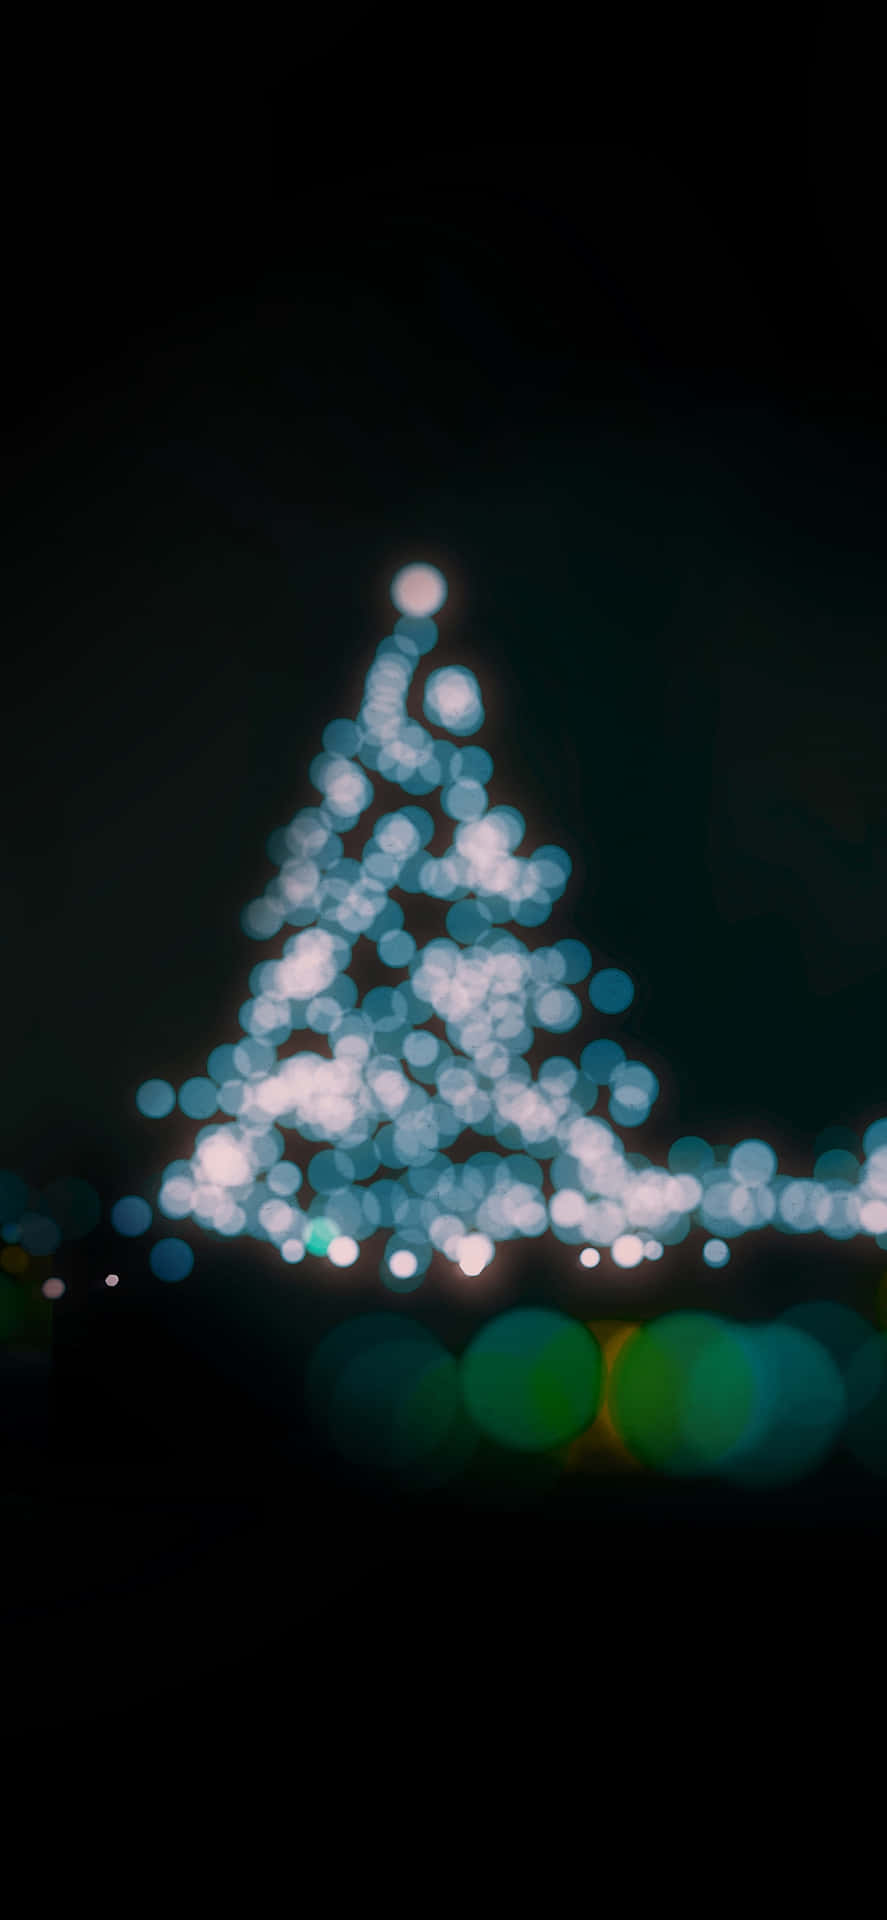 Bokeh_ Christmas_ Tree_ Lights_ Dark_ Background.jpg Wallpaper